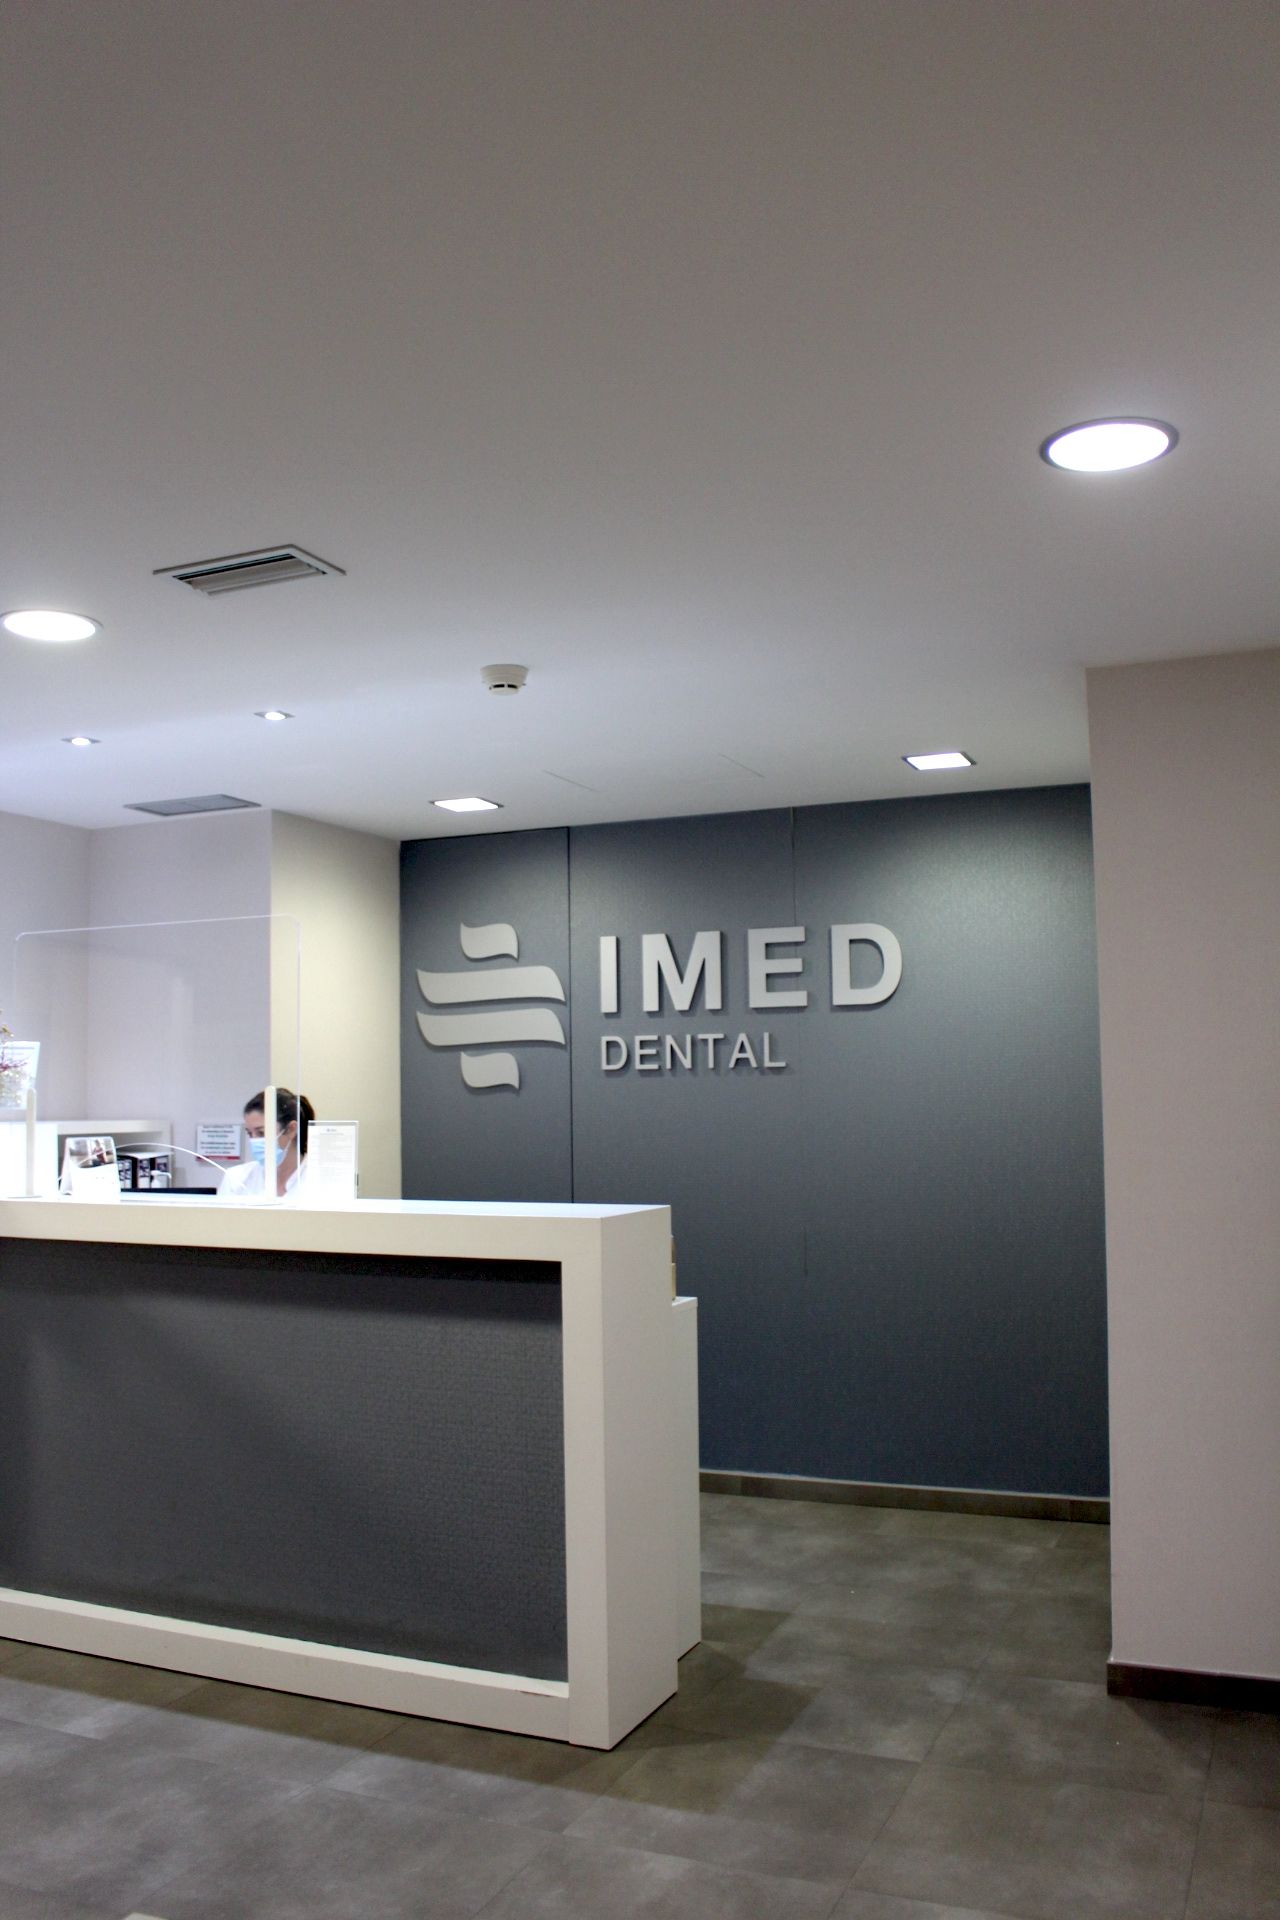 IMED Dental forma parte de IMED Hospitales, ofreciendo toda la seguridad que un entorno hospitalario puede dar a un servicio de odontológico avanzado.